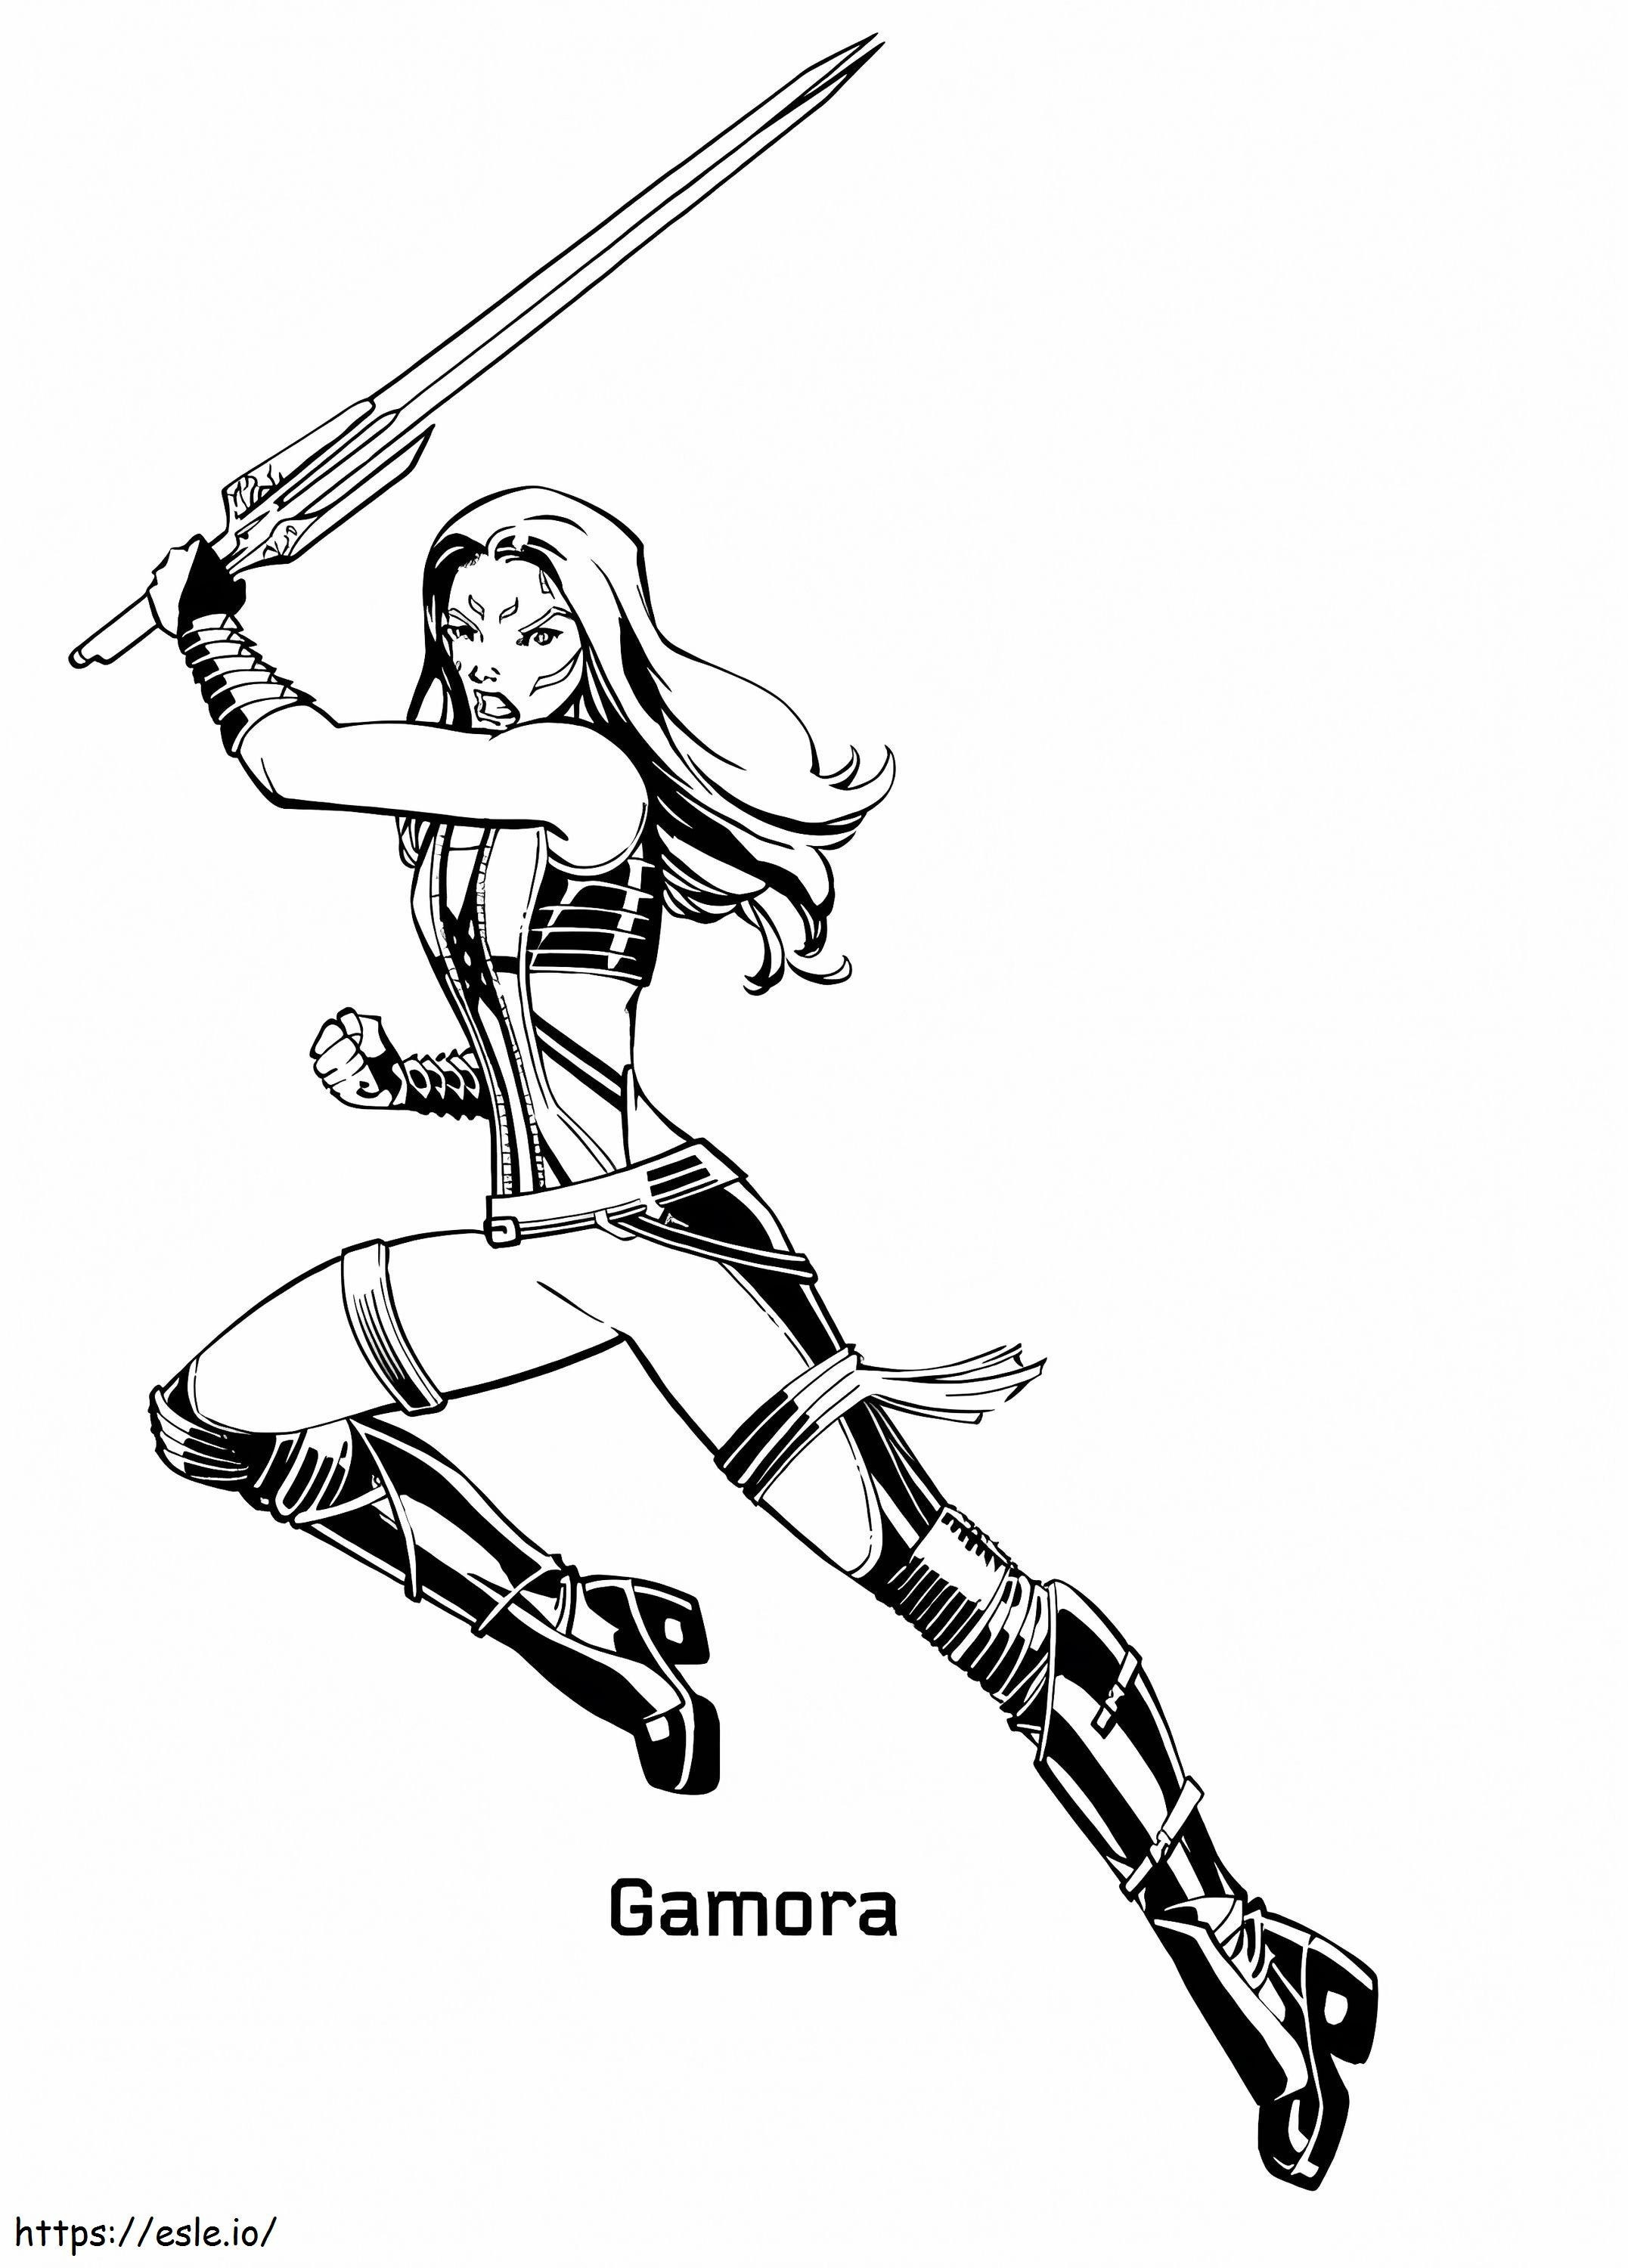 Kılıçlı Gamora boyama